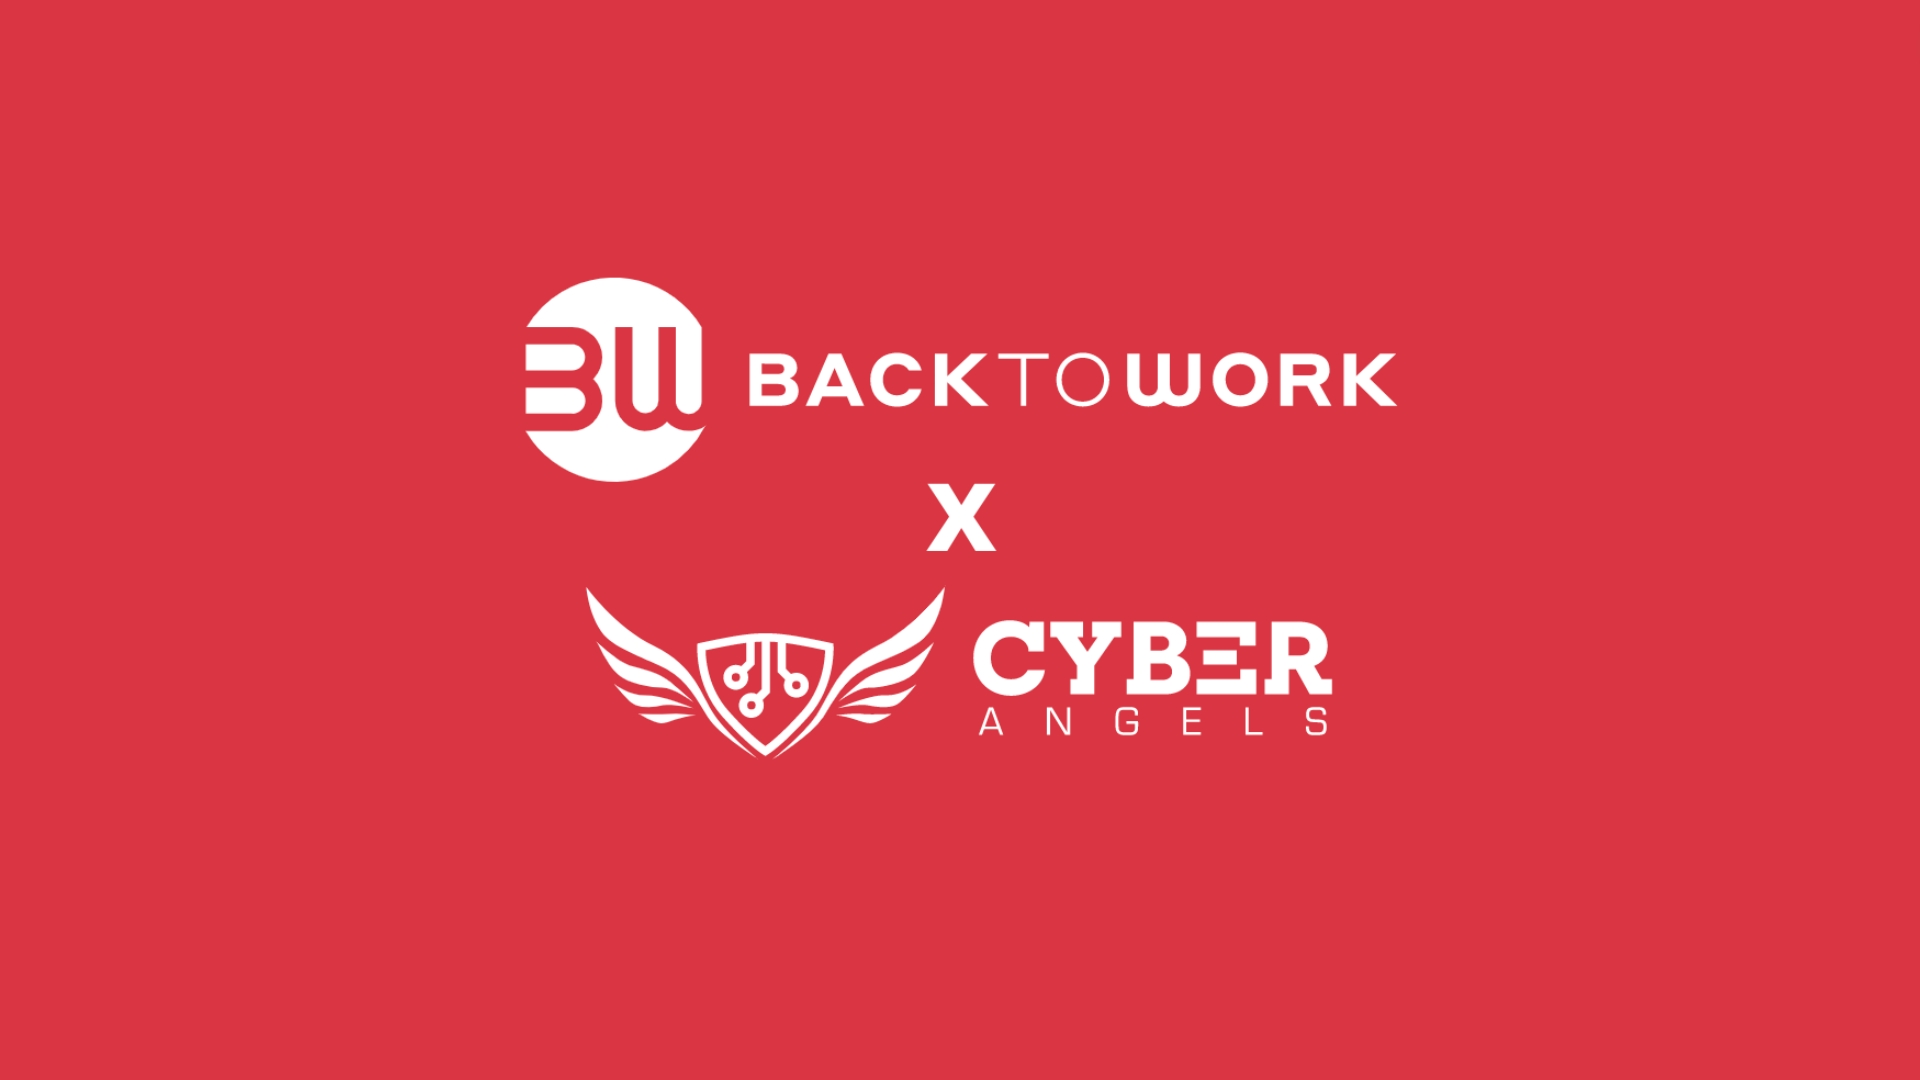 Cybersecurity und Investitionen: Cyberangels und Backtowork arbeiten für informierte Anleger zusammen